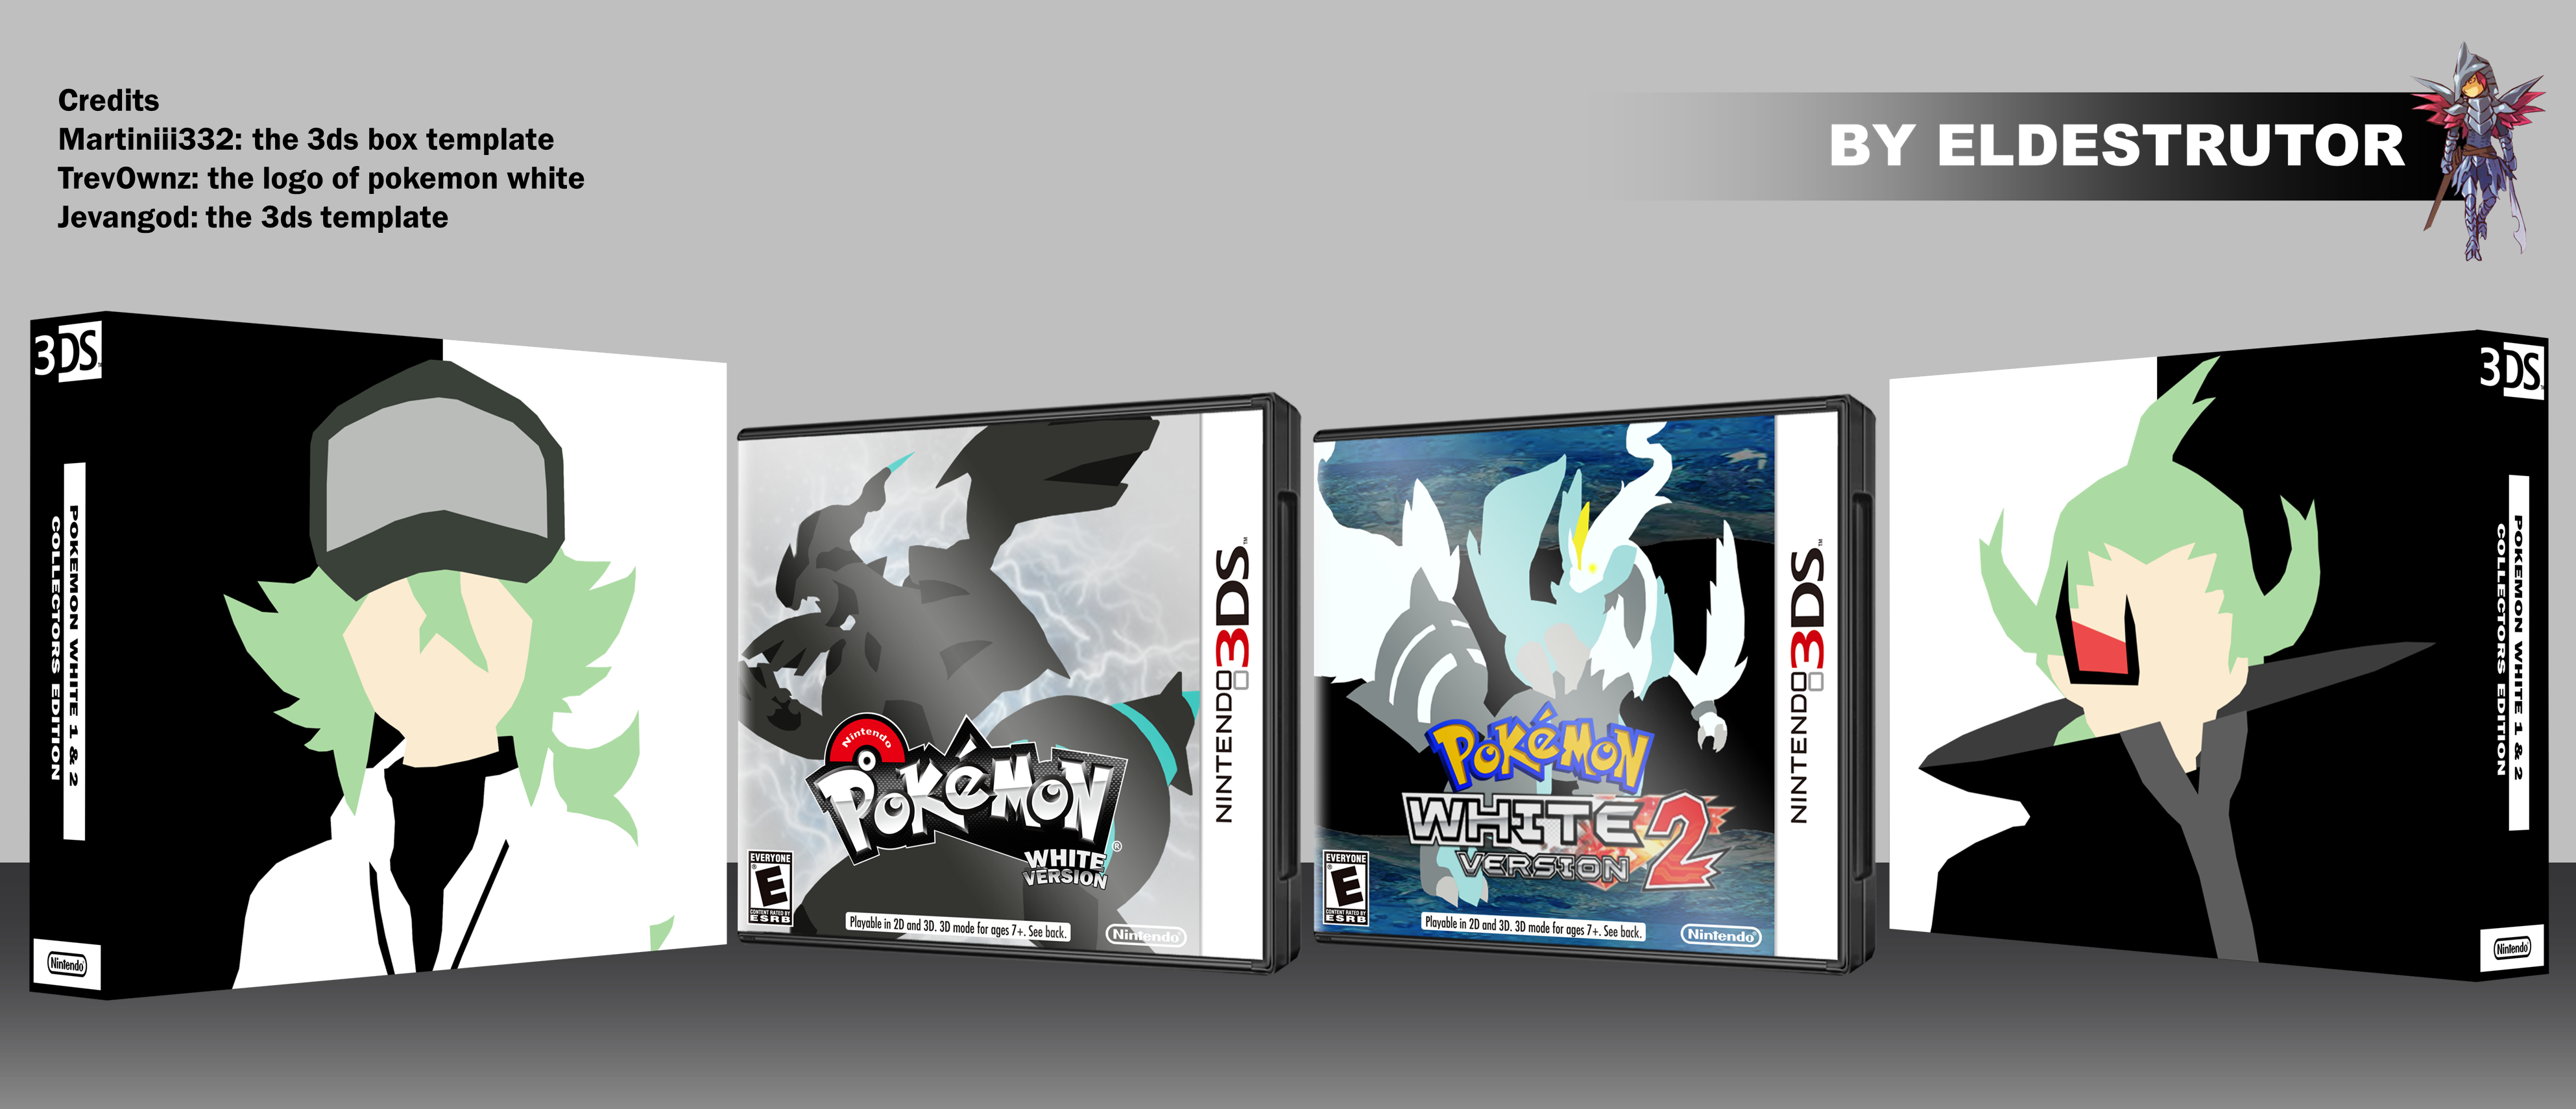 Pokemon white 1 & 2 collectors edition box cover